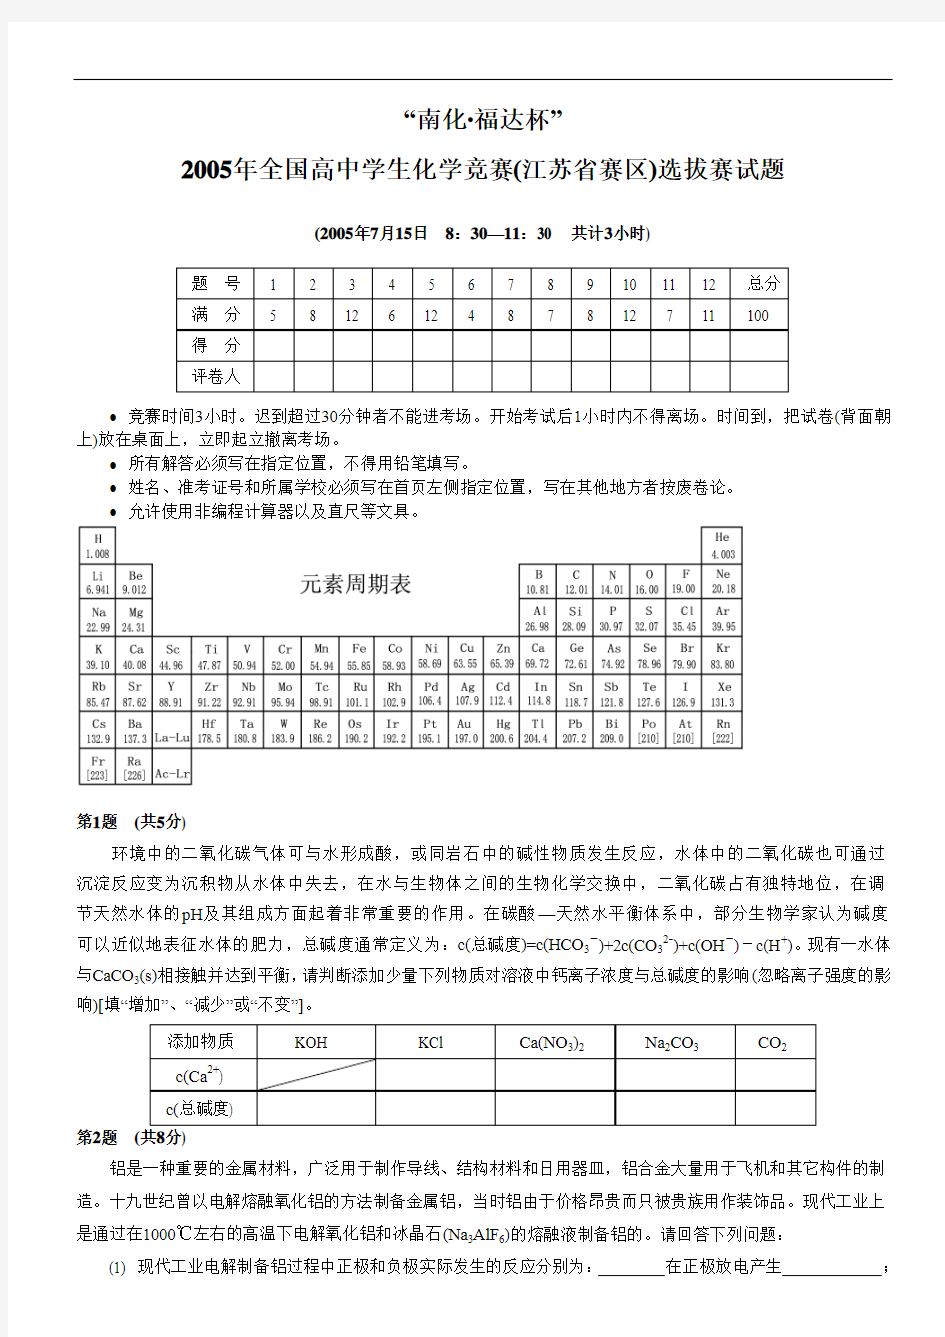 2005年全国高中学生化学竞赛(江苏省赛区)选